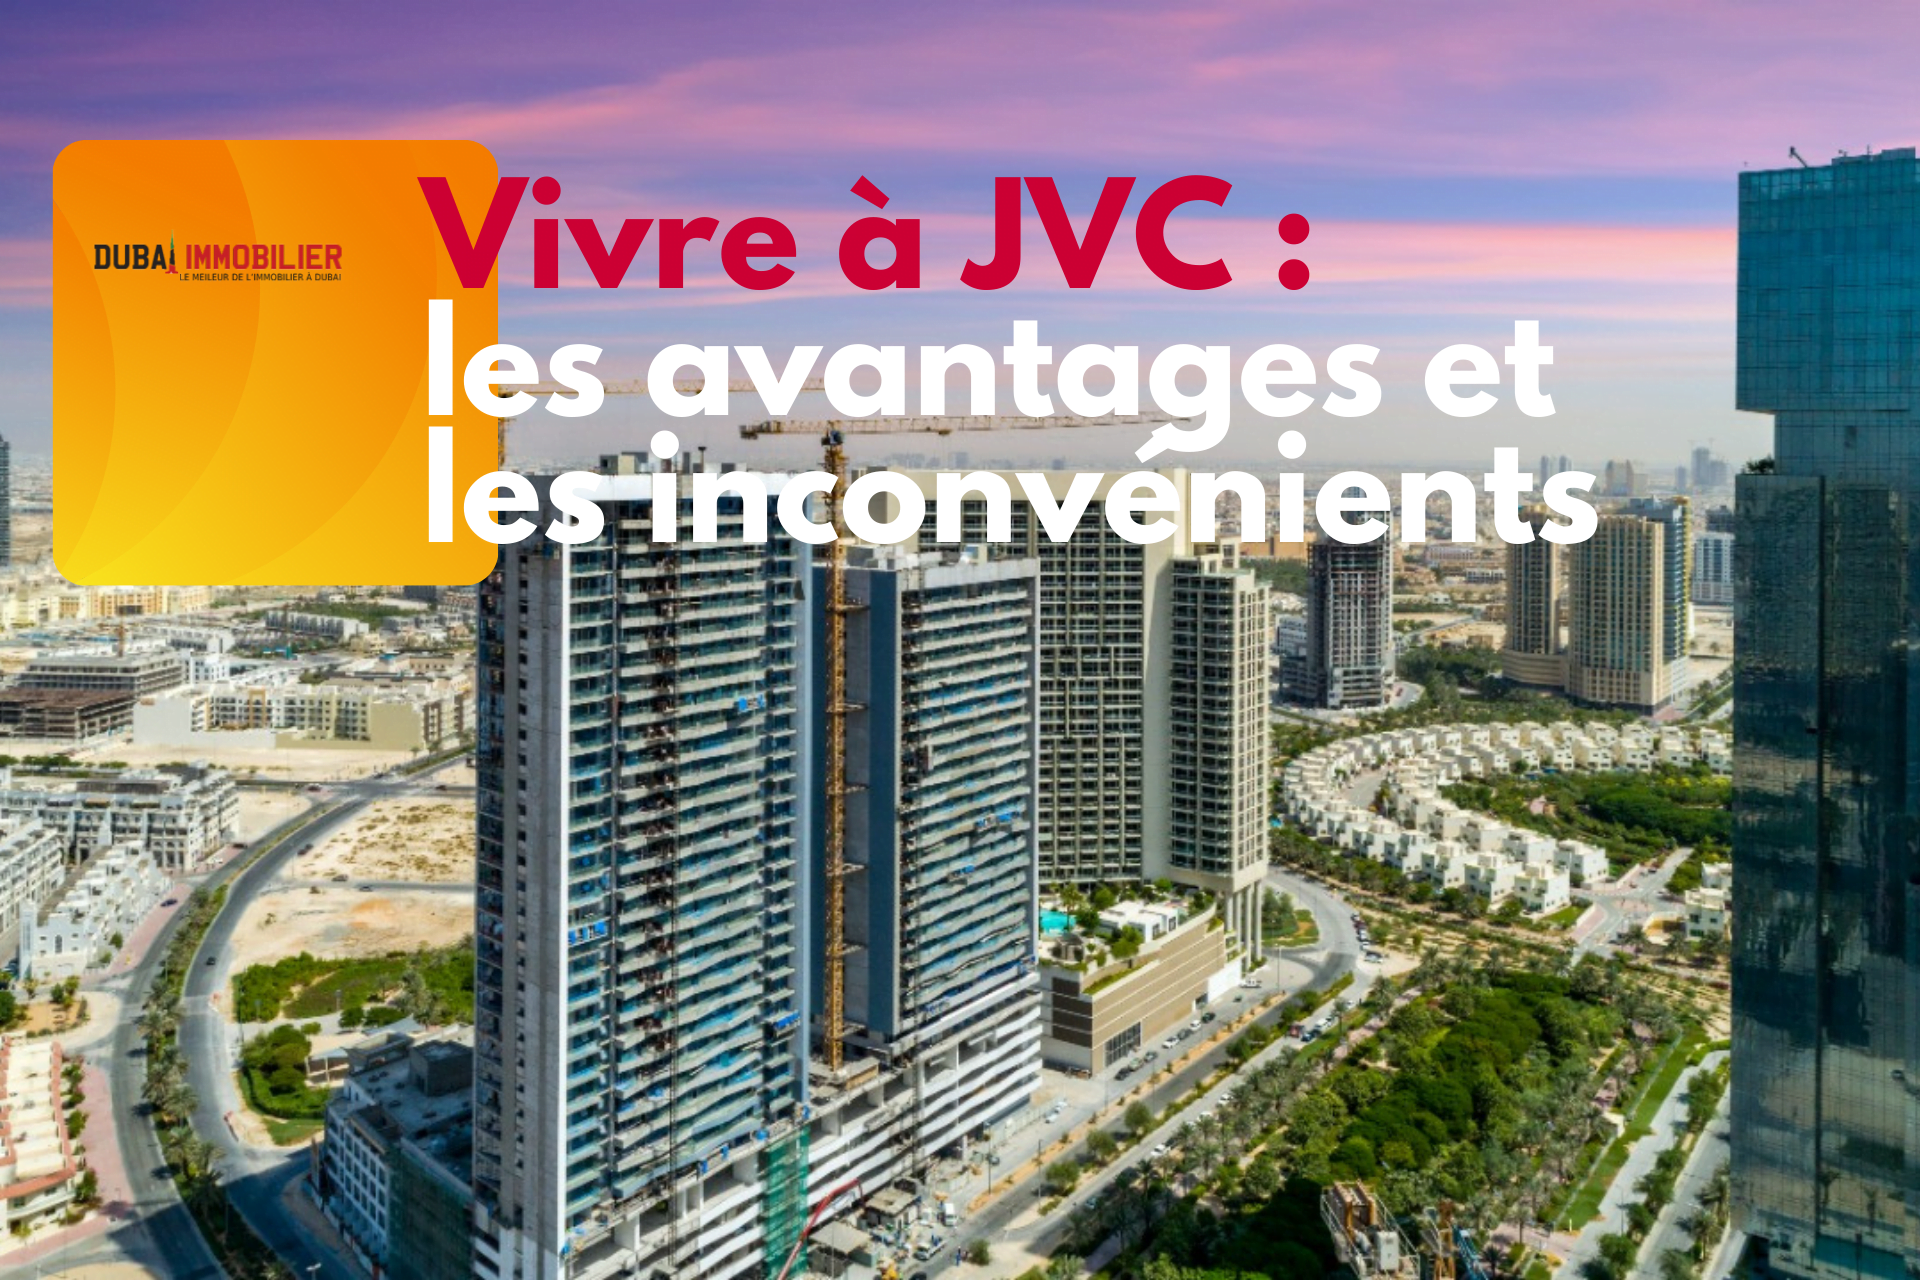 JVC ad43f8e6d1714f3e6b943c391cd3d42f 2000 - Immobilier Dubai